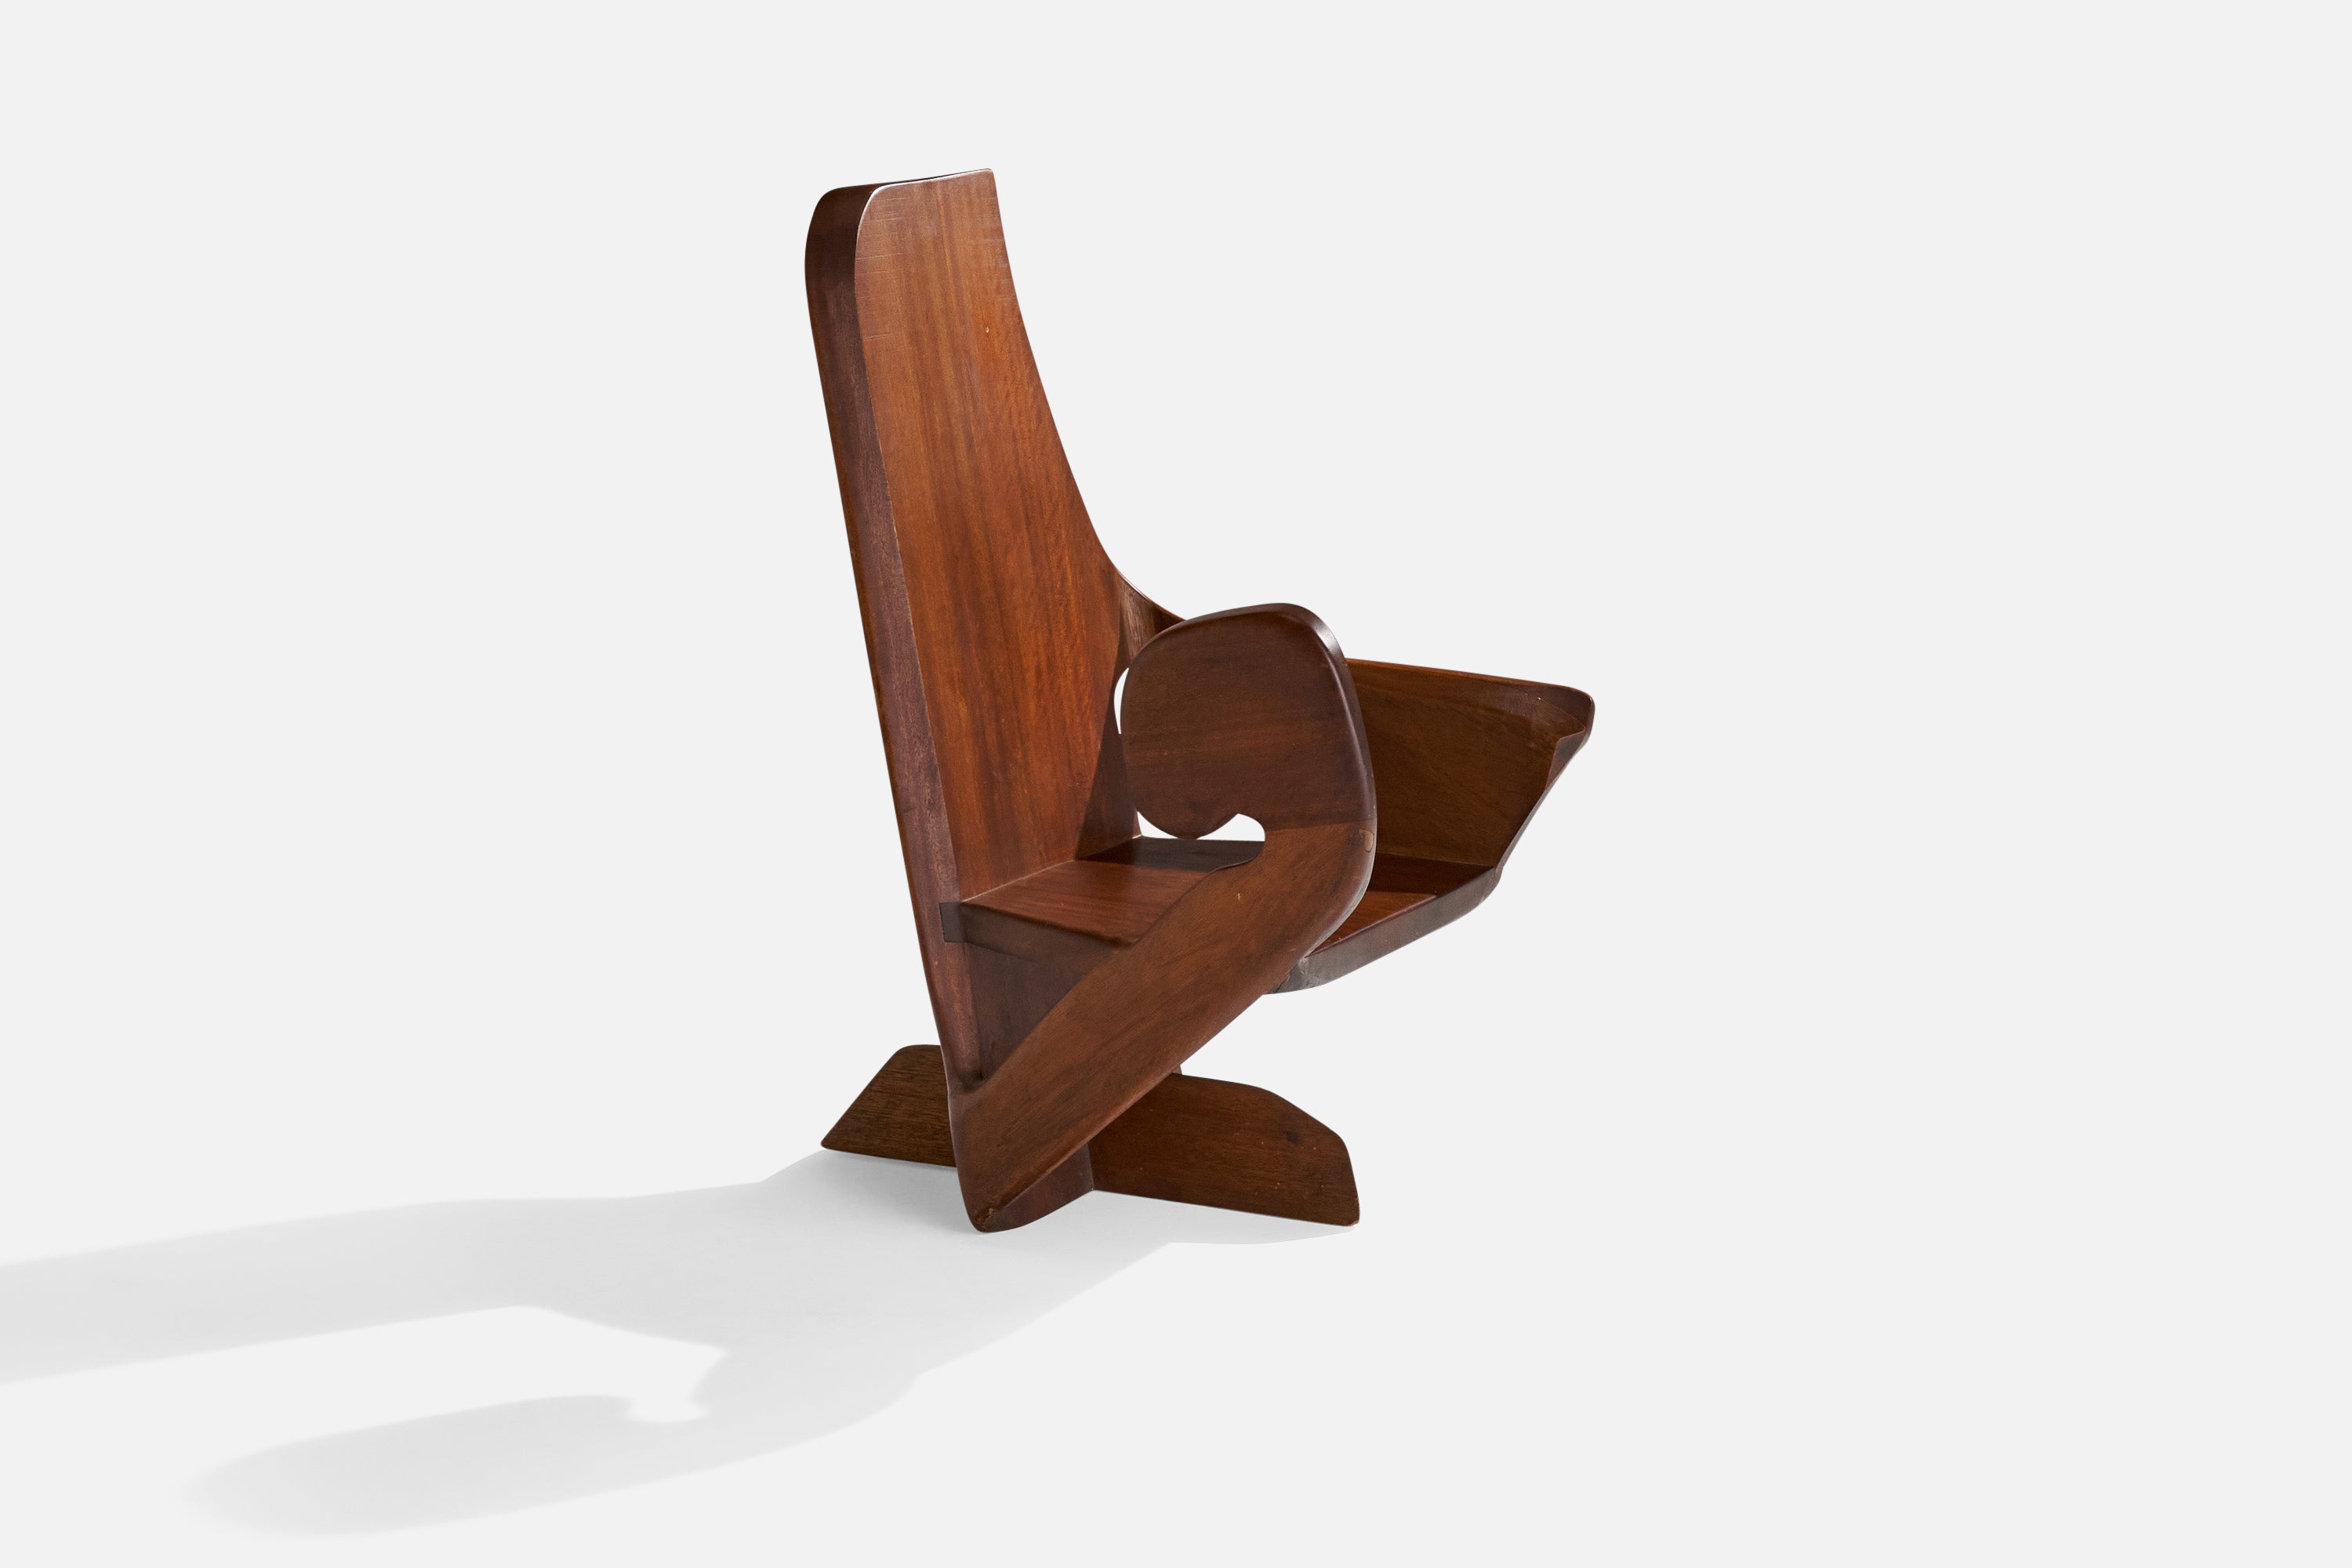 Ein Lounge- oder Sessel aus Nussbaumholz in freier Form, entworfen und hergestellt in den USA. Signiert Fisher und datiert 1980.

Sitzhöhe 14,75